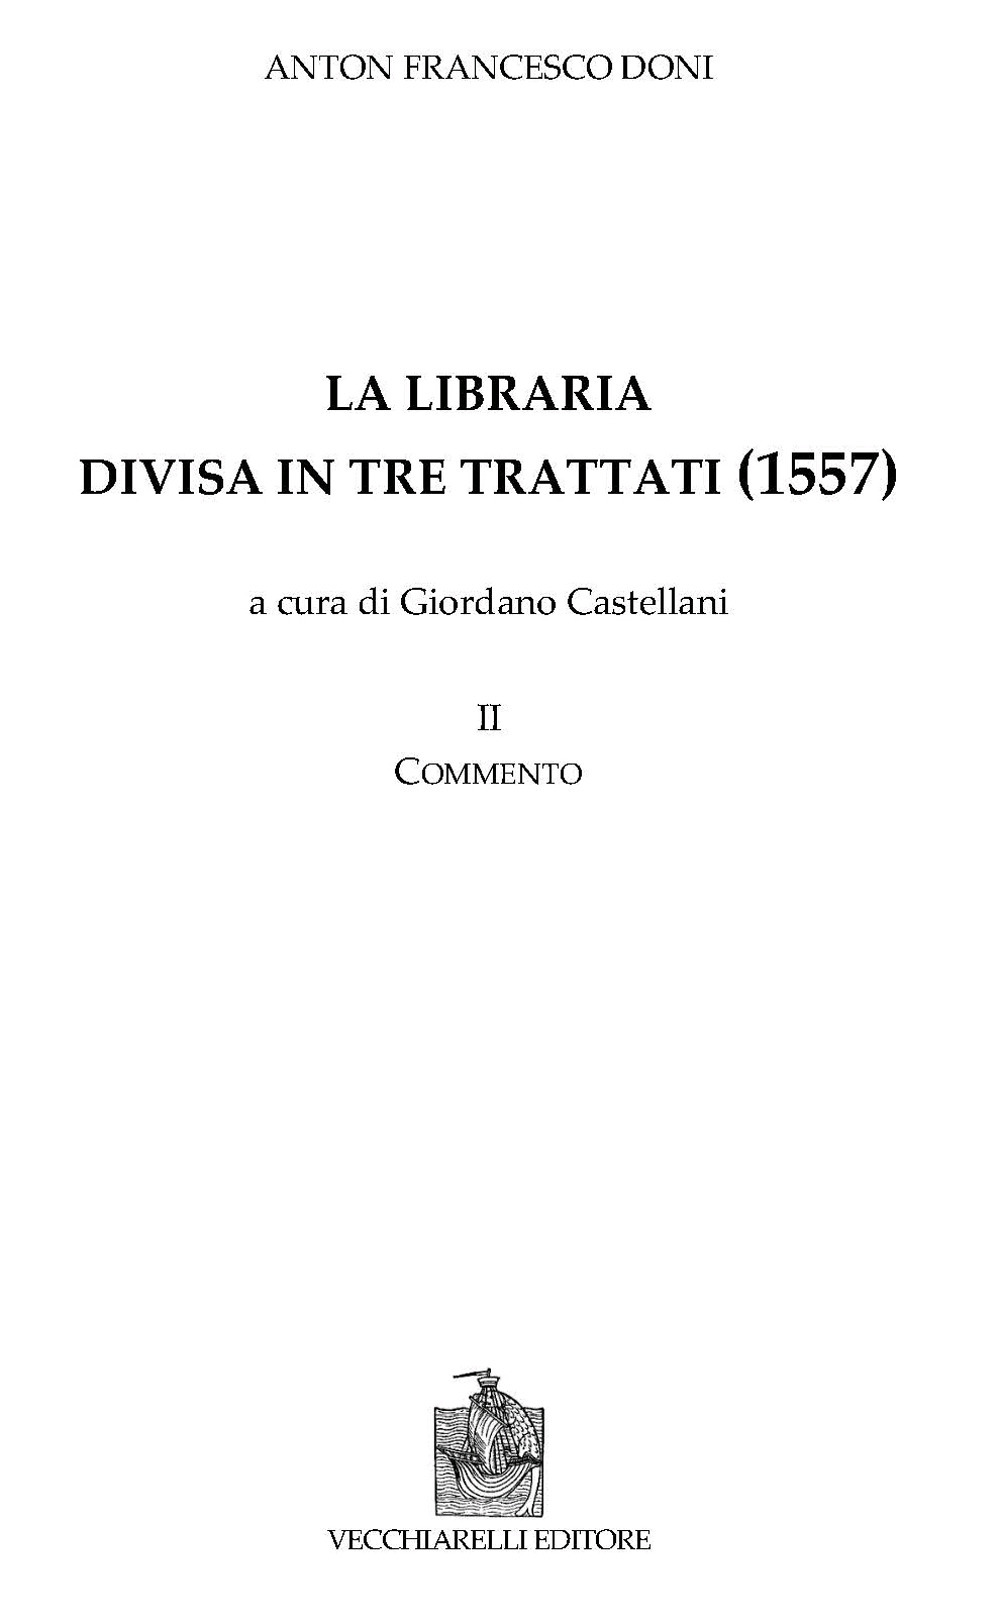 La libraria divisa in tre trattati. Vol. 2: Commento